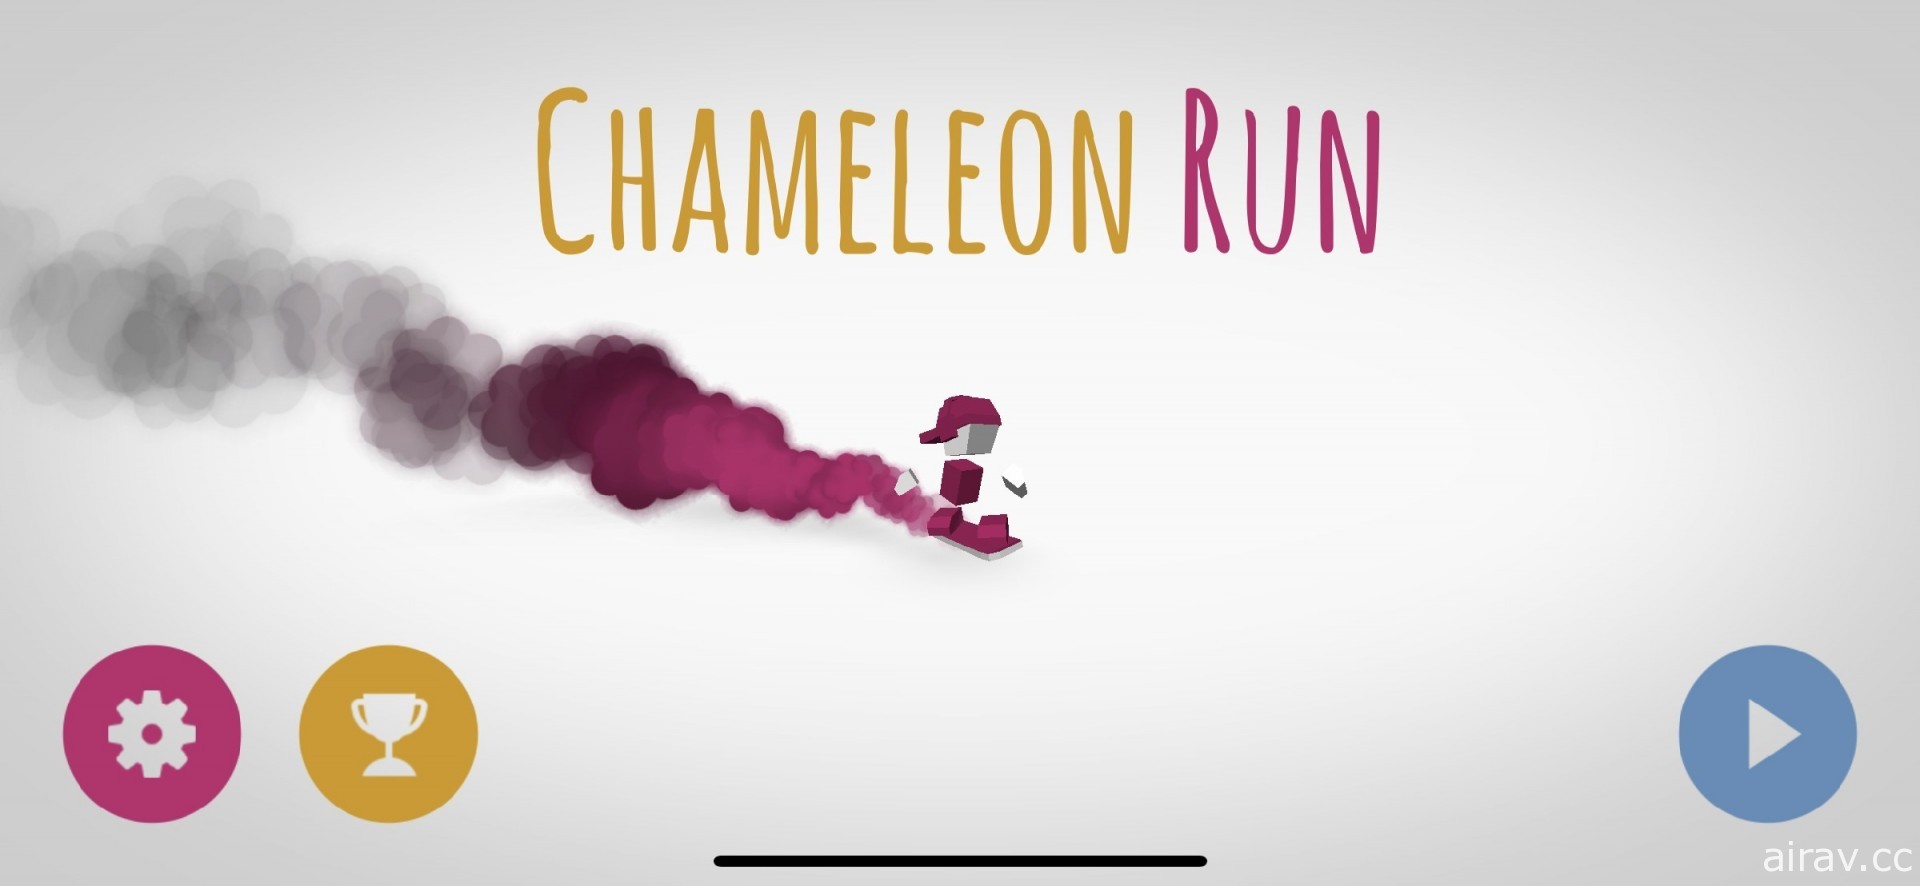 【試玩】跑酷遊戲《Chameleon Run+》在狂奔之餘考驗視覺神經反應